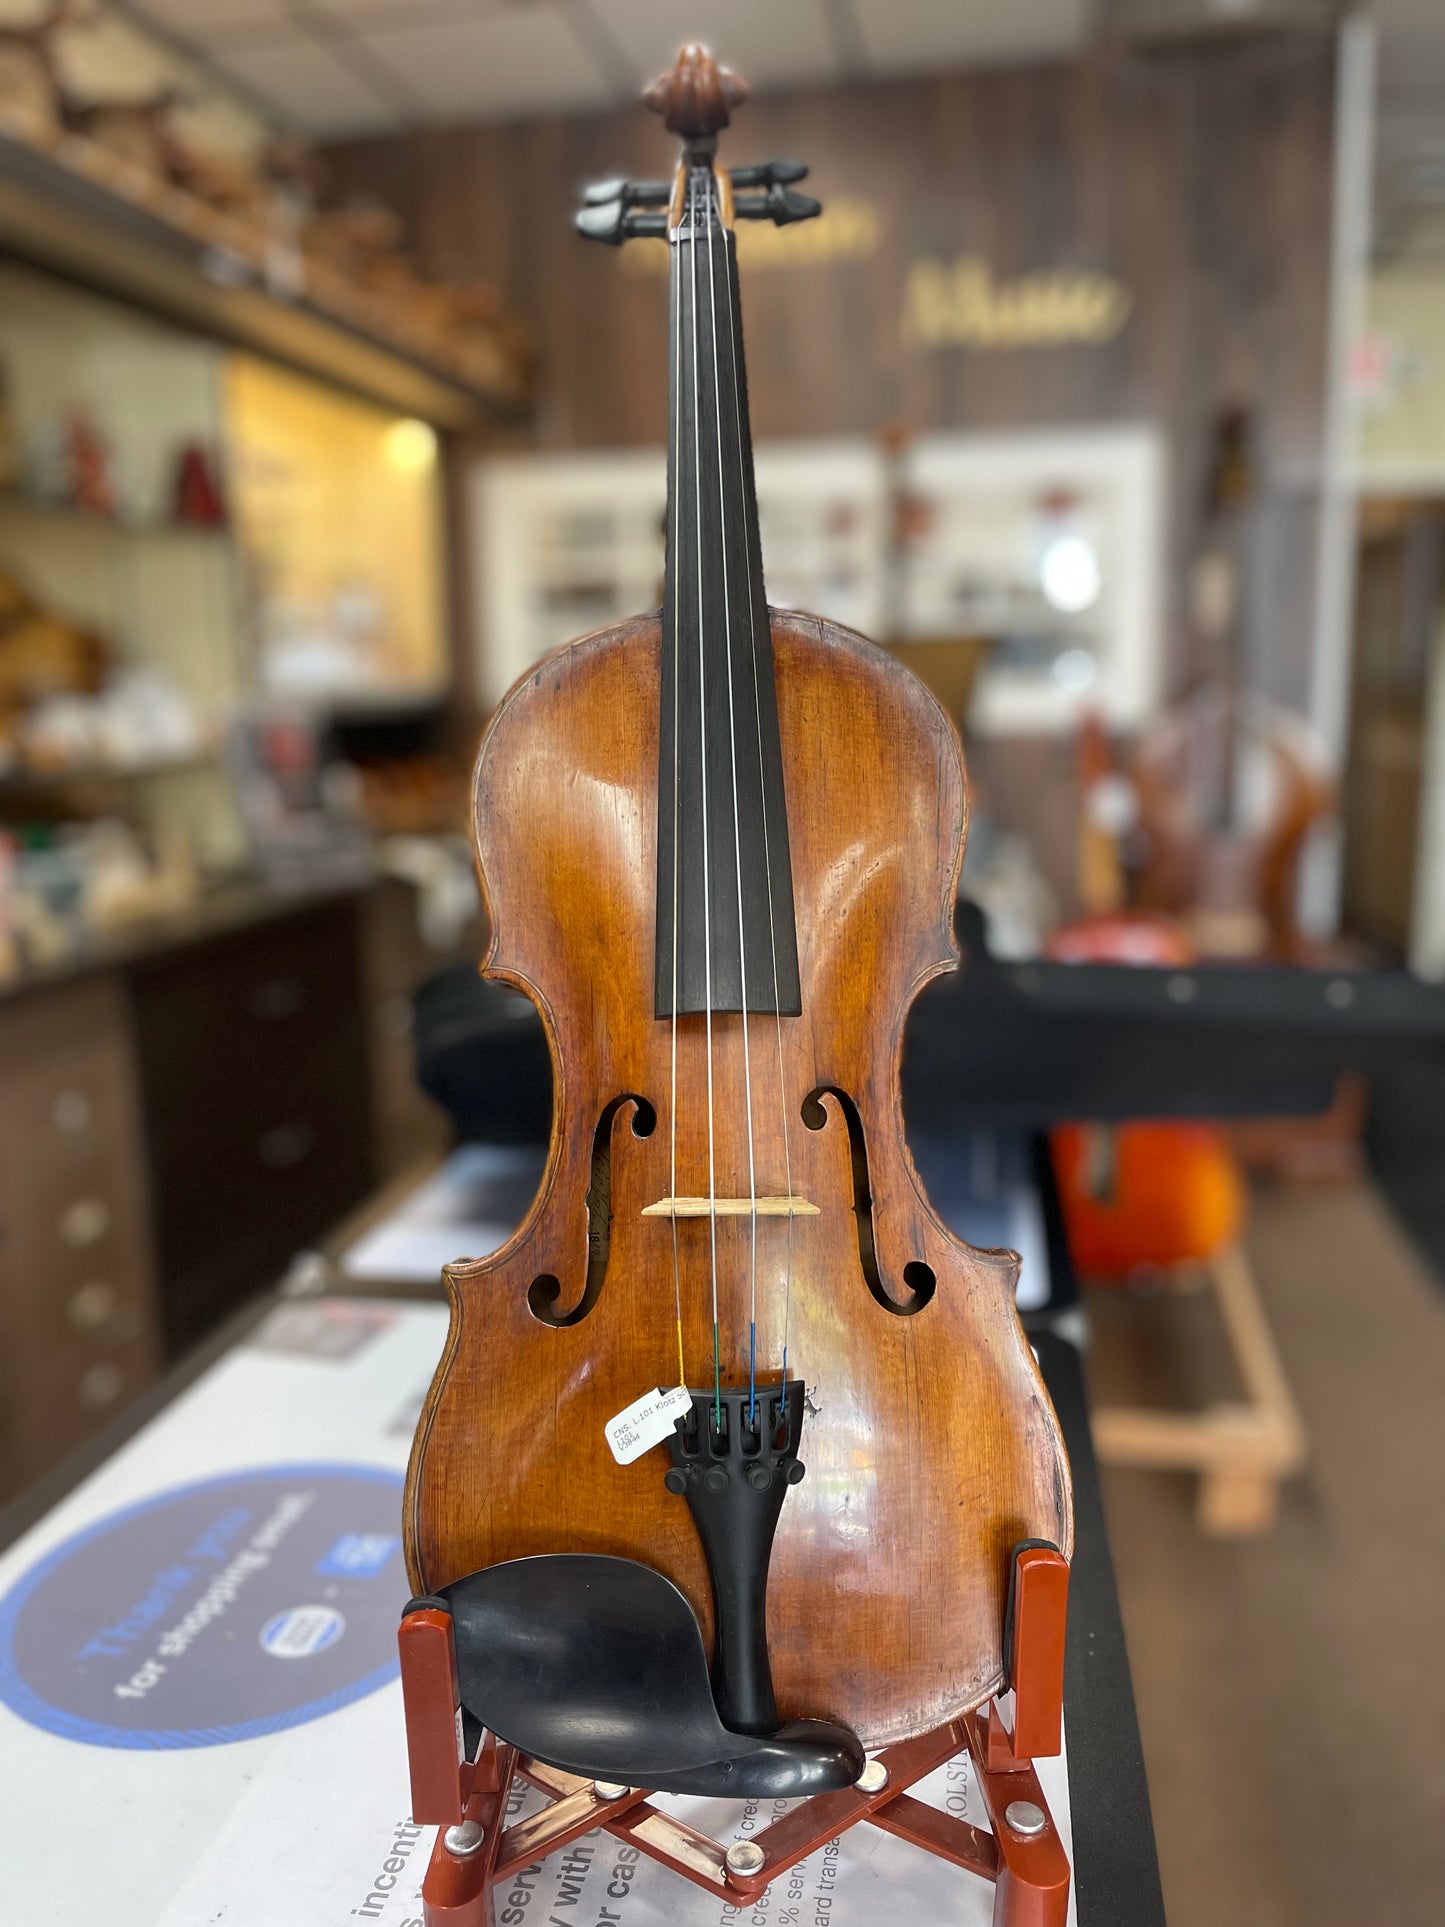 Klotz School Violin